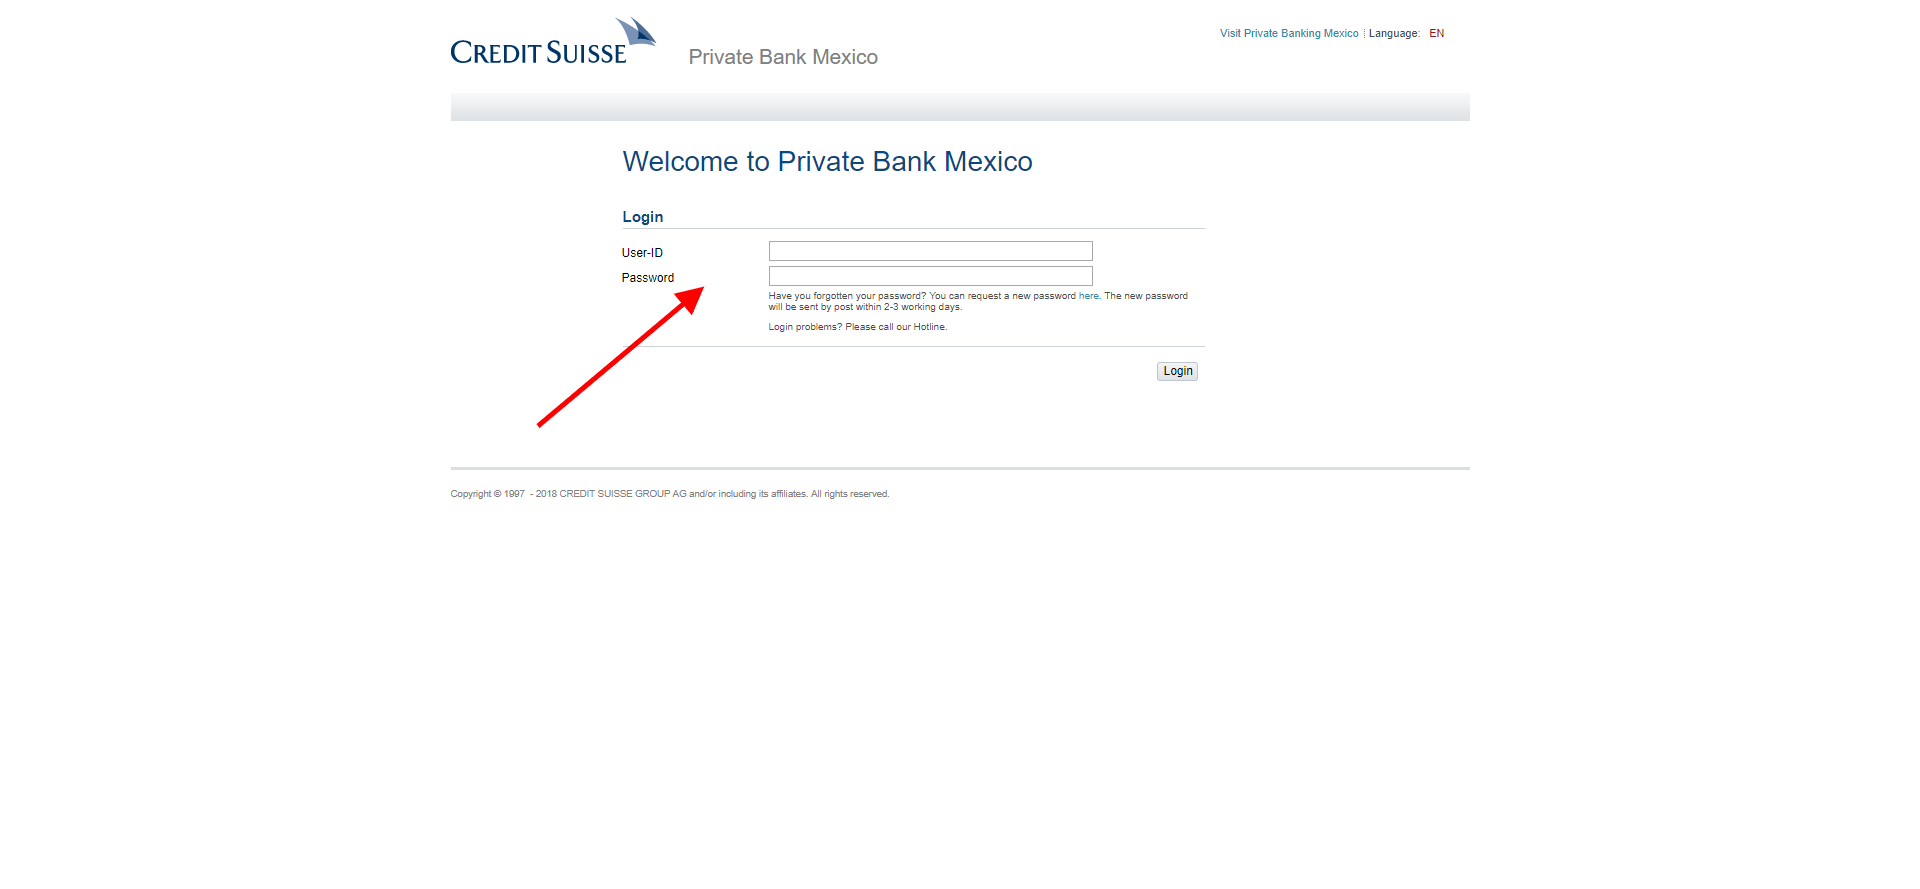  Credit Suisse Mexico, Mexico City, Mexico